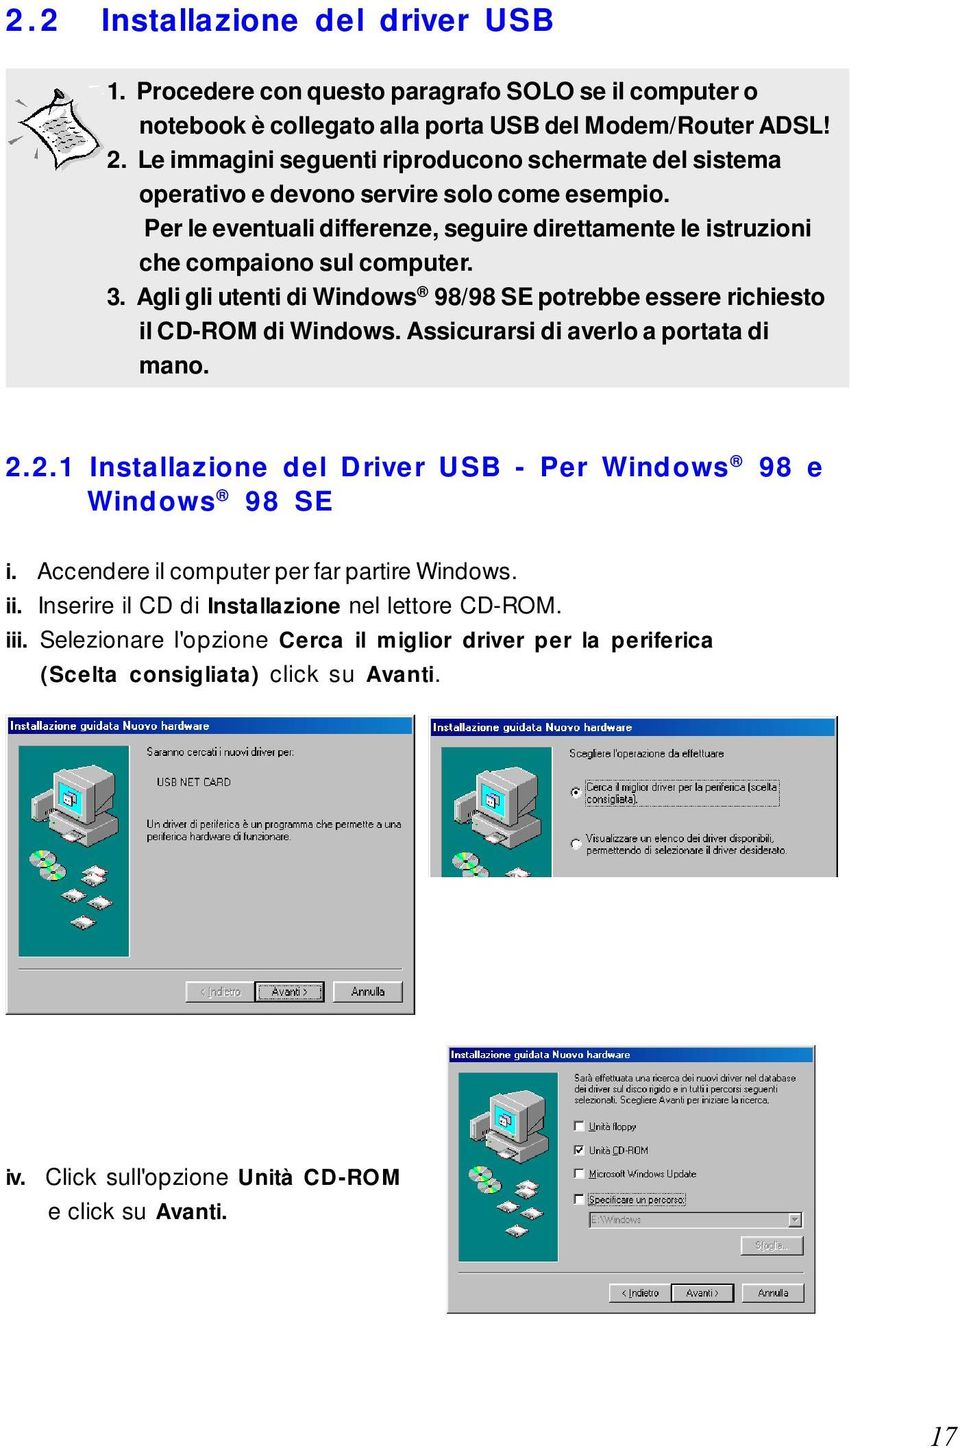 Agli gli utenti di Windows 98/98 SE potrebbe essere richiesto il CD-ROM di Windows. Assicurarsi di averlo a portata di mano. 2.2.1 Installazione del Driver USB - Per Windows 98 e Windows 98 SE i.